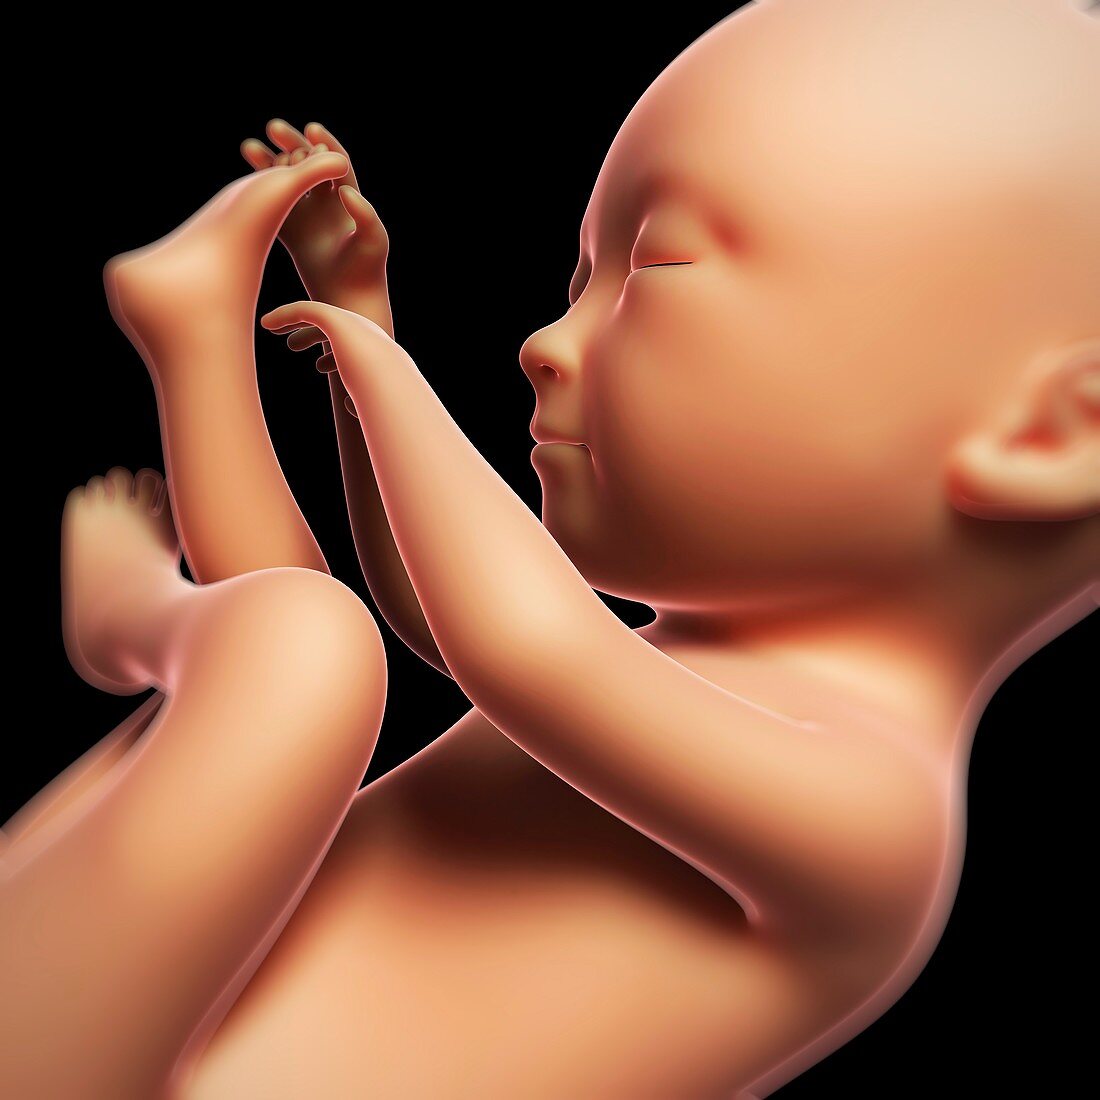 Foetus at 7 months,artwork